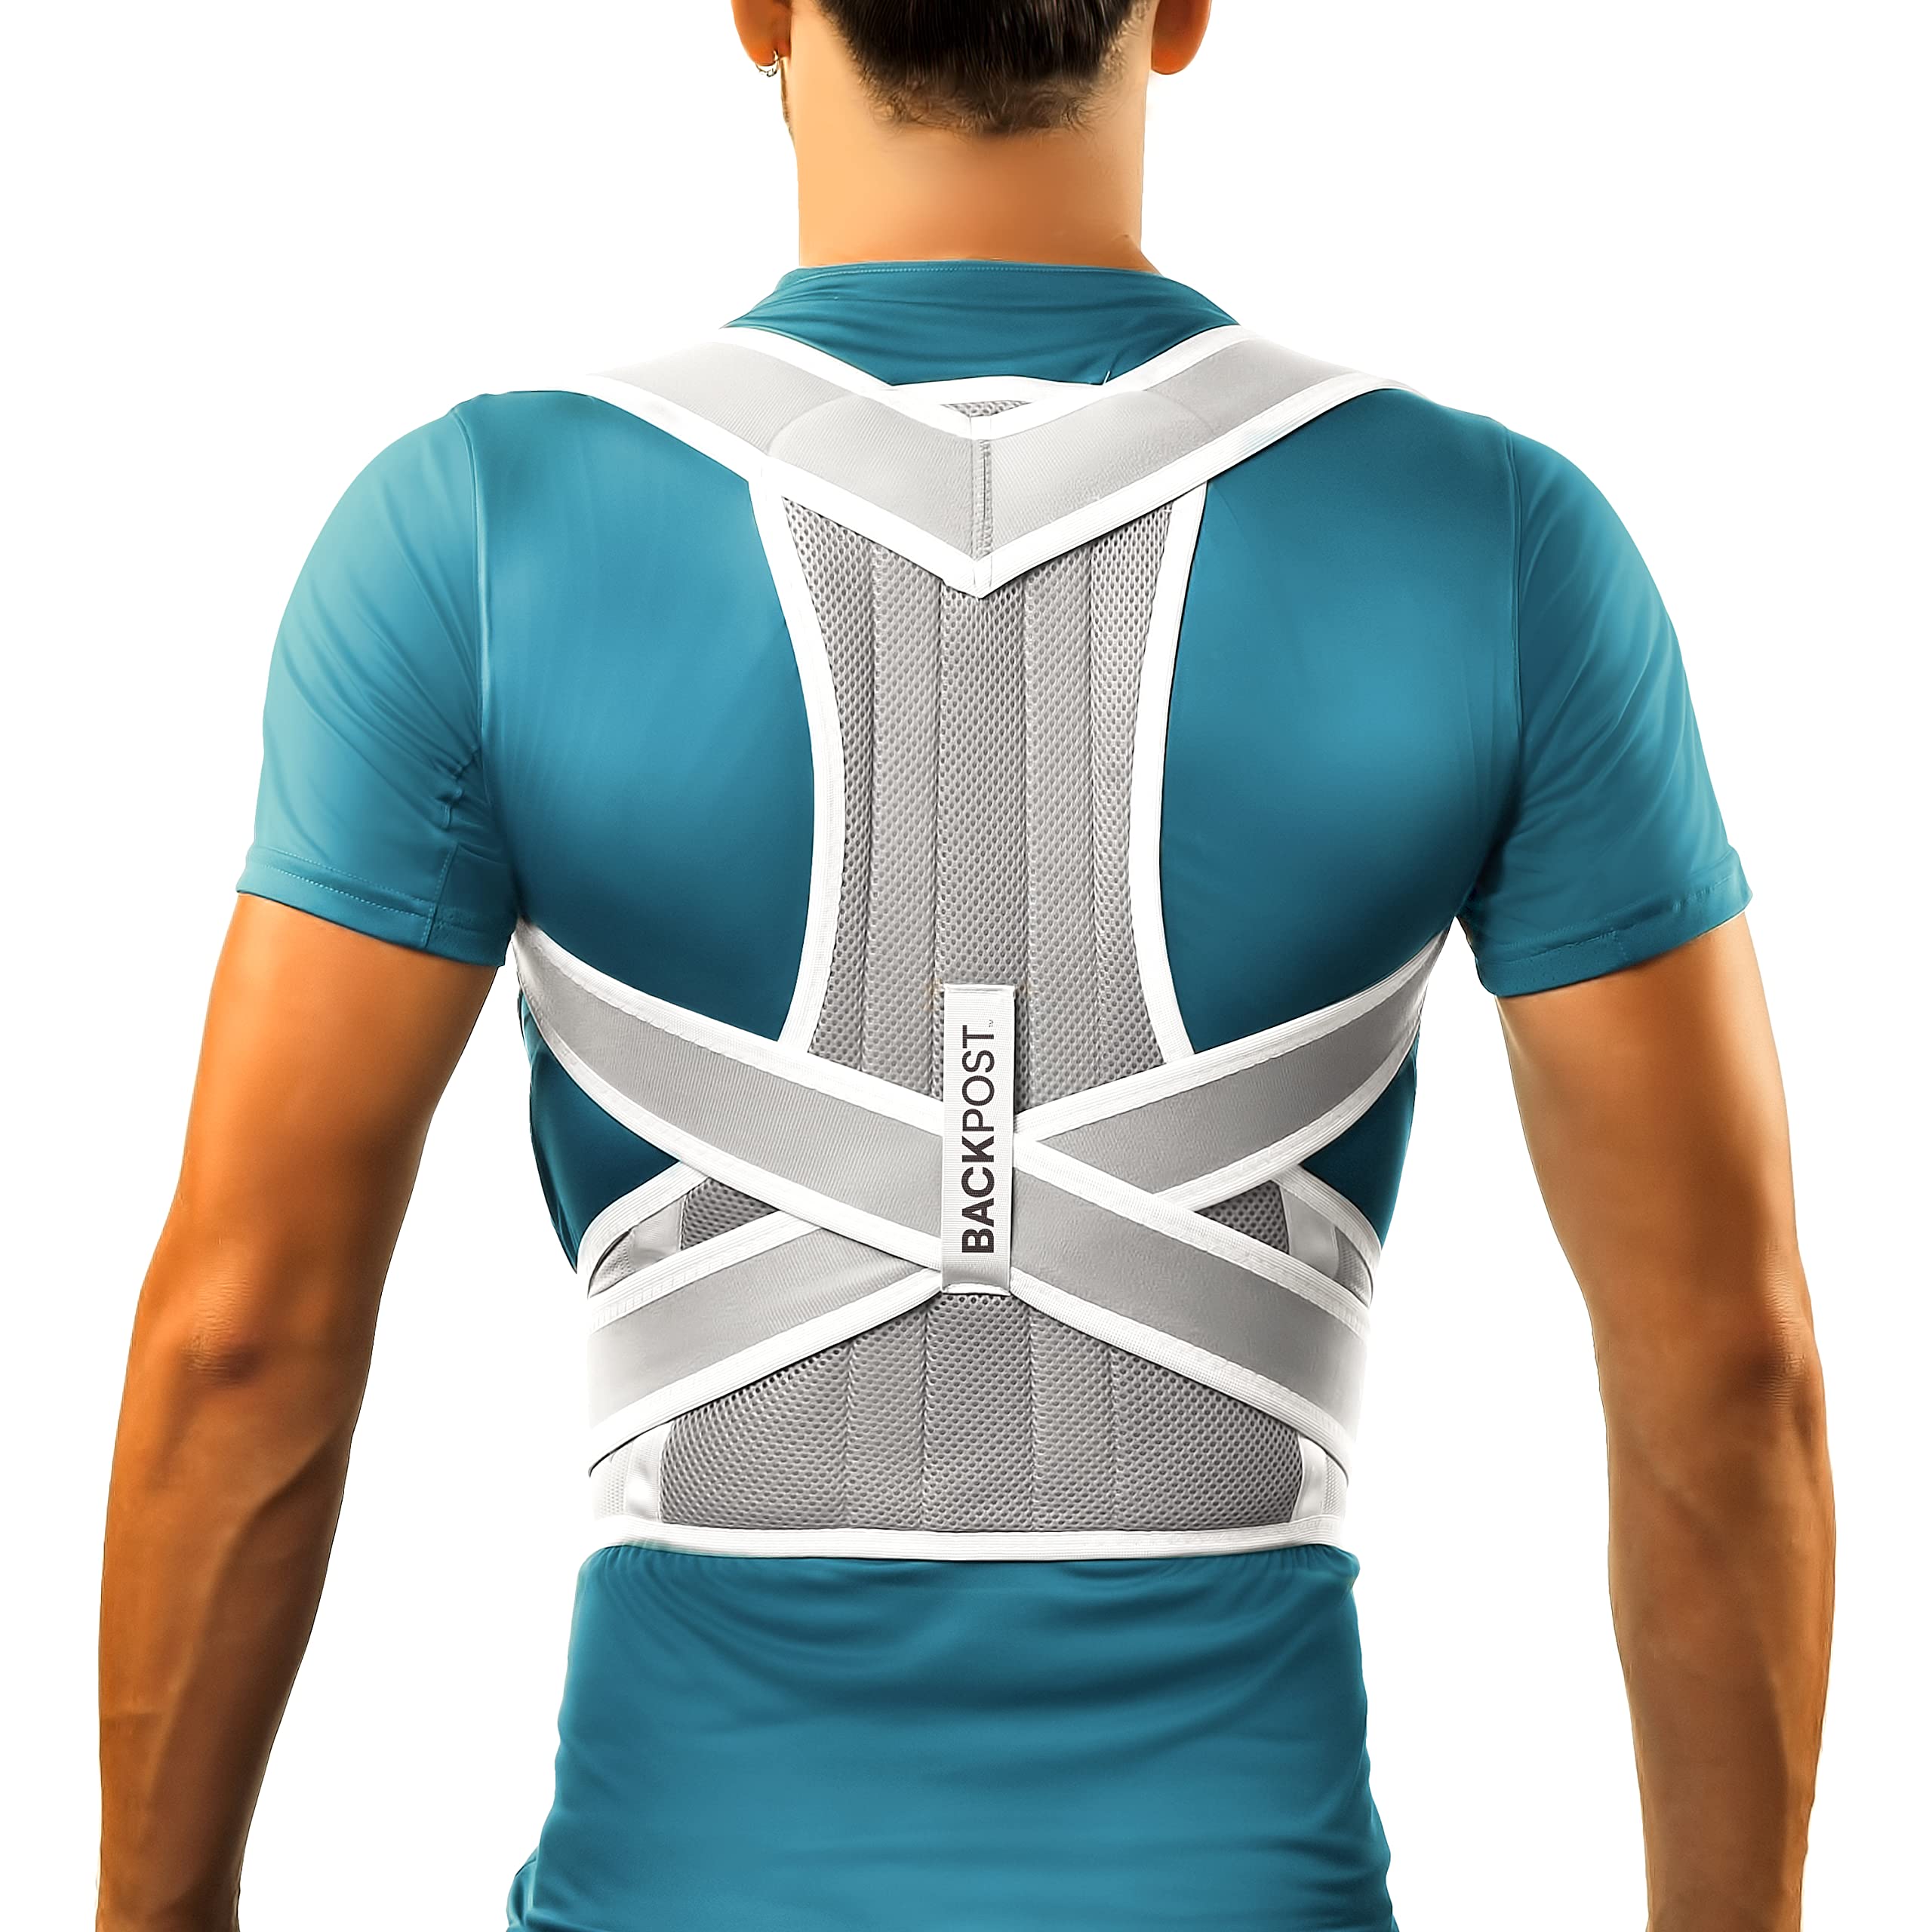 Posture Corrector for Women and Men,Adjustable Back Posture Belt